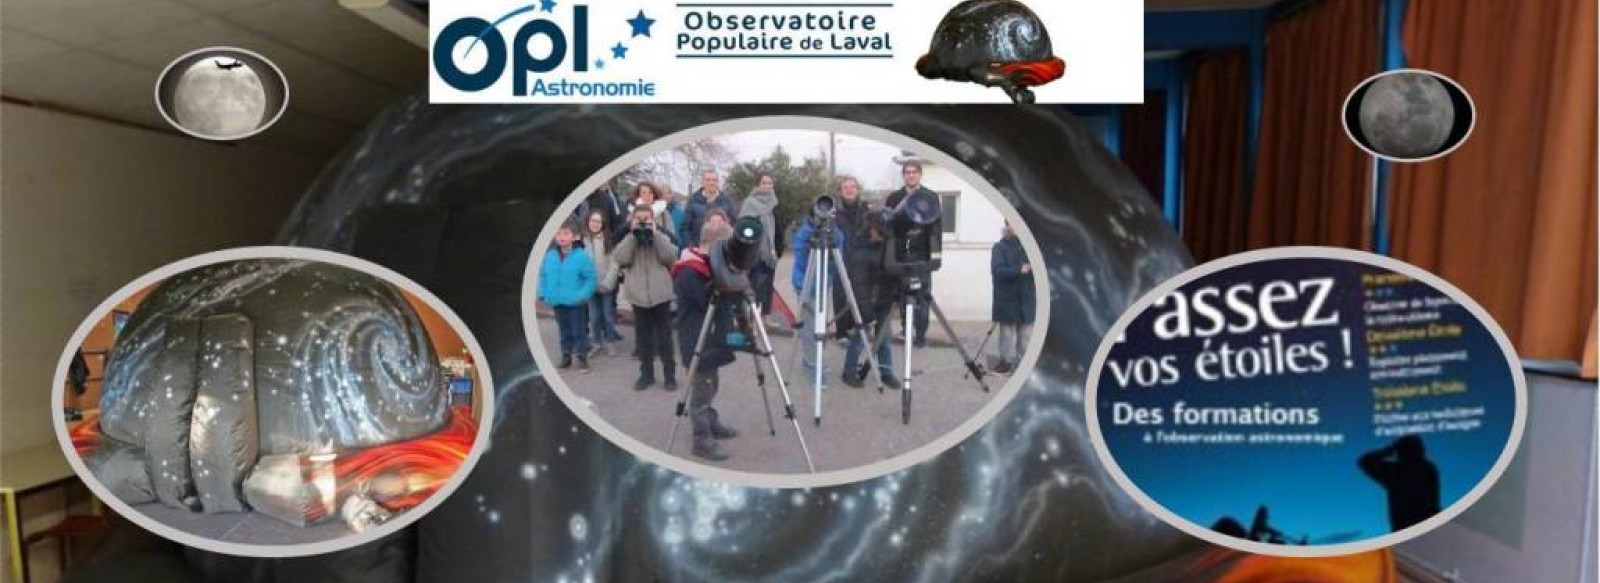 OBSERVATOIRE POPULAIRE DE LAVAL - OPL ASTRONOMIE